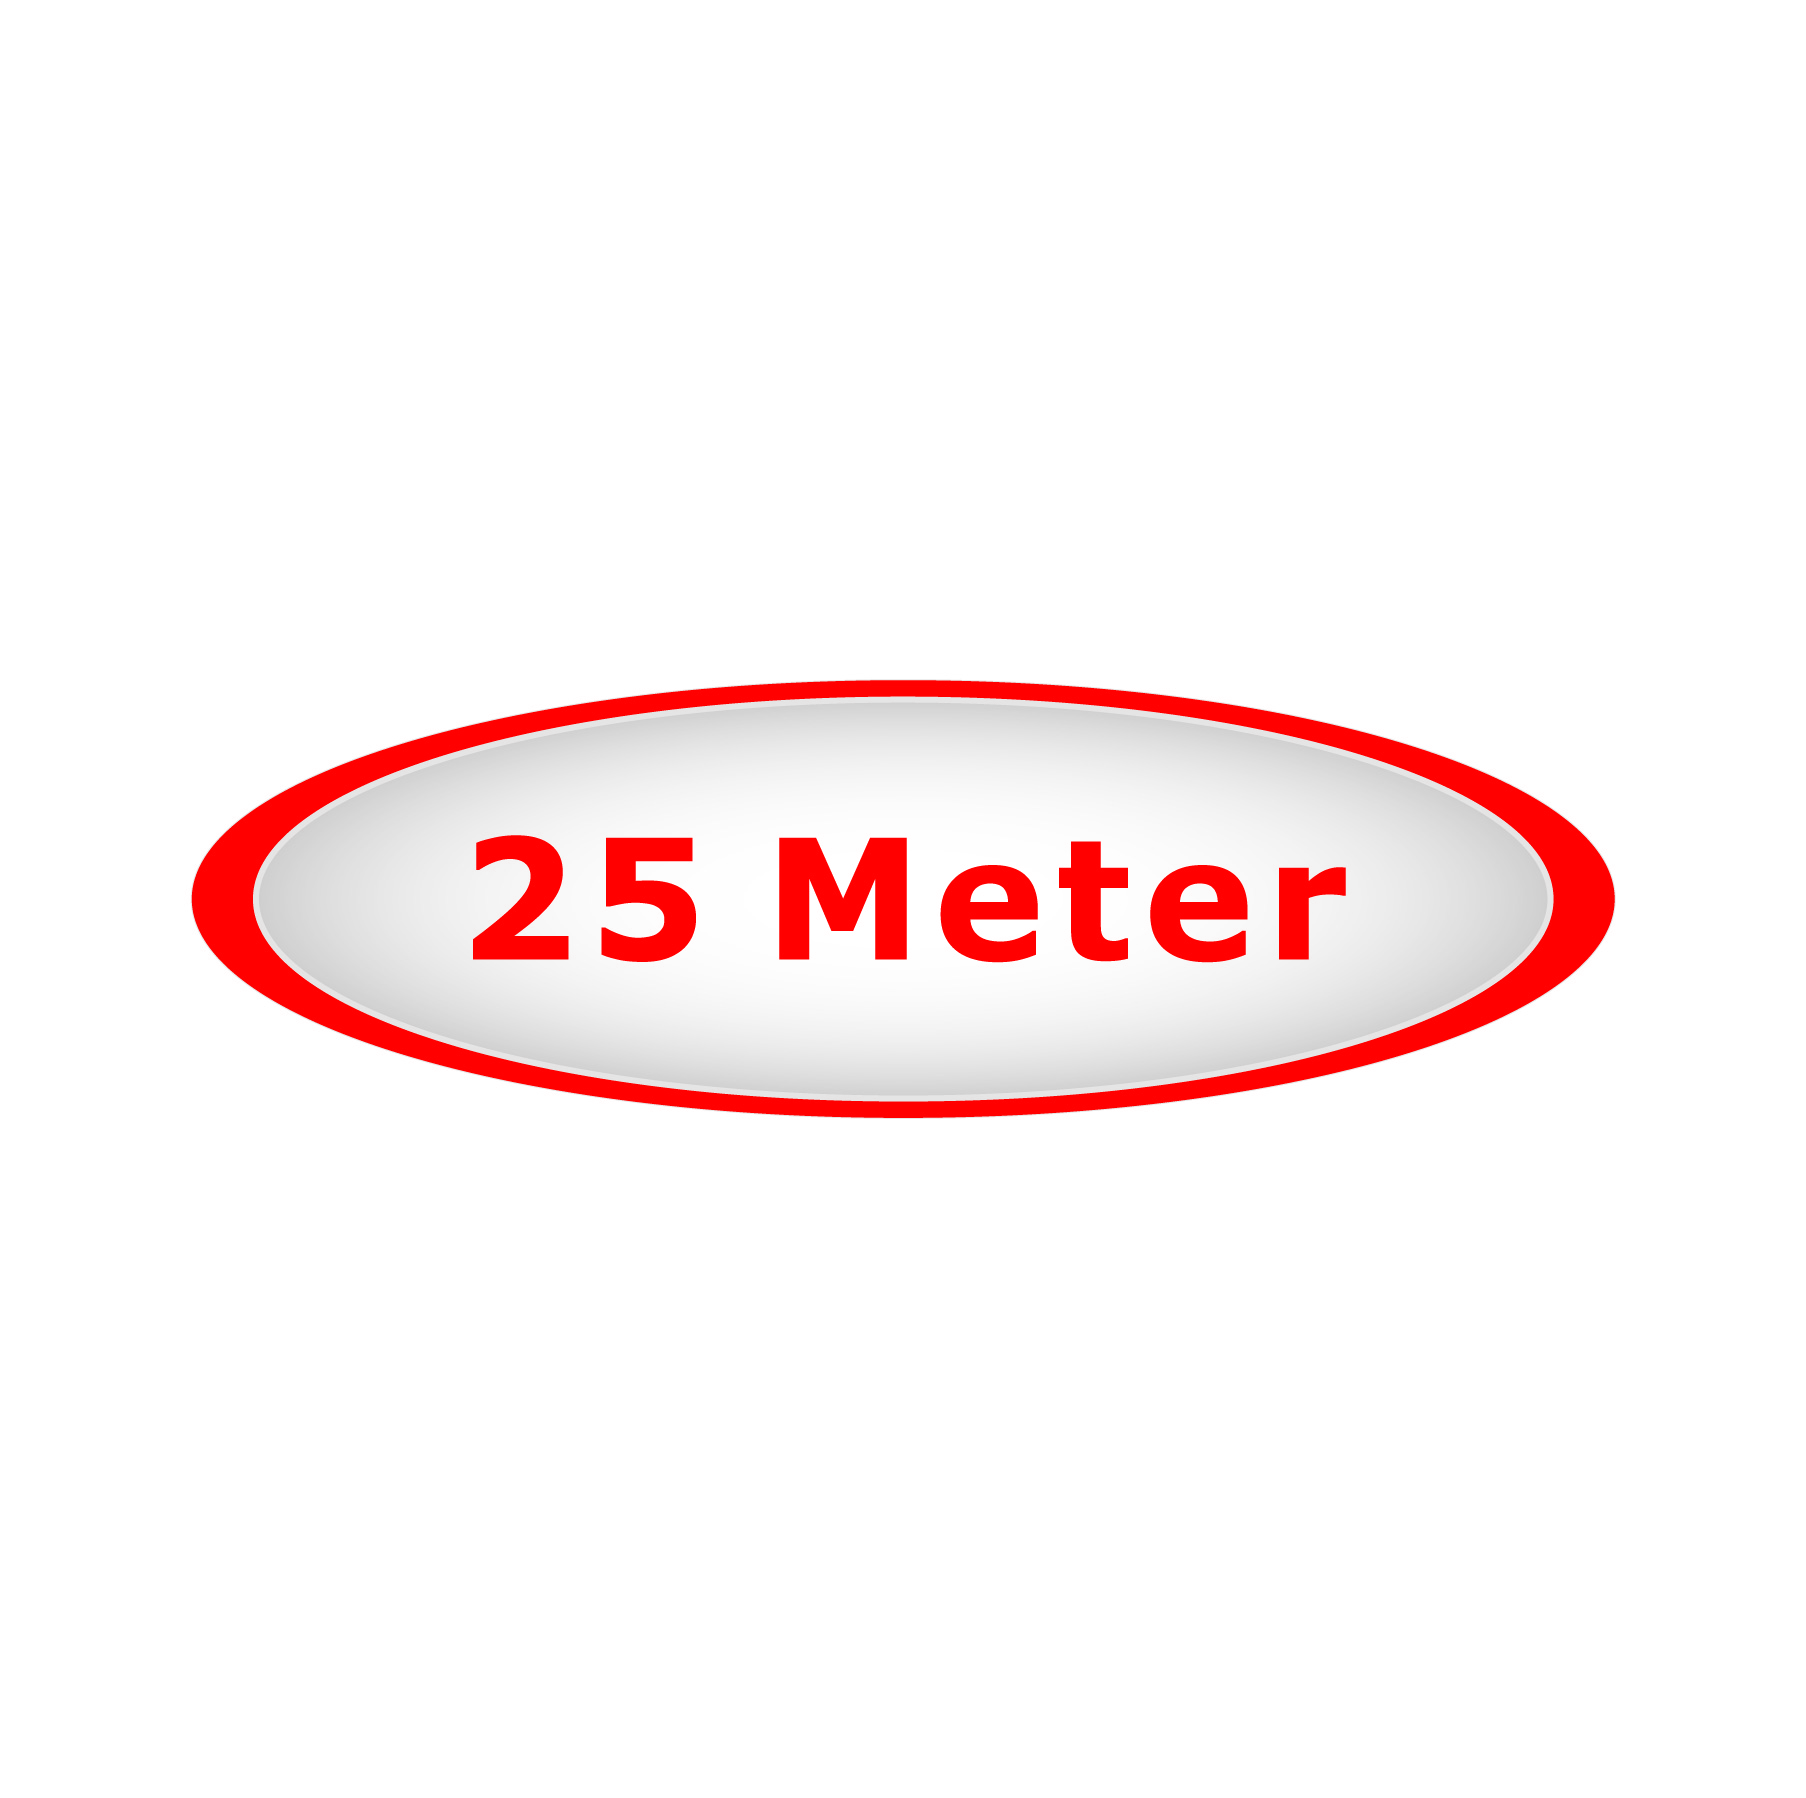 25 Meter